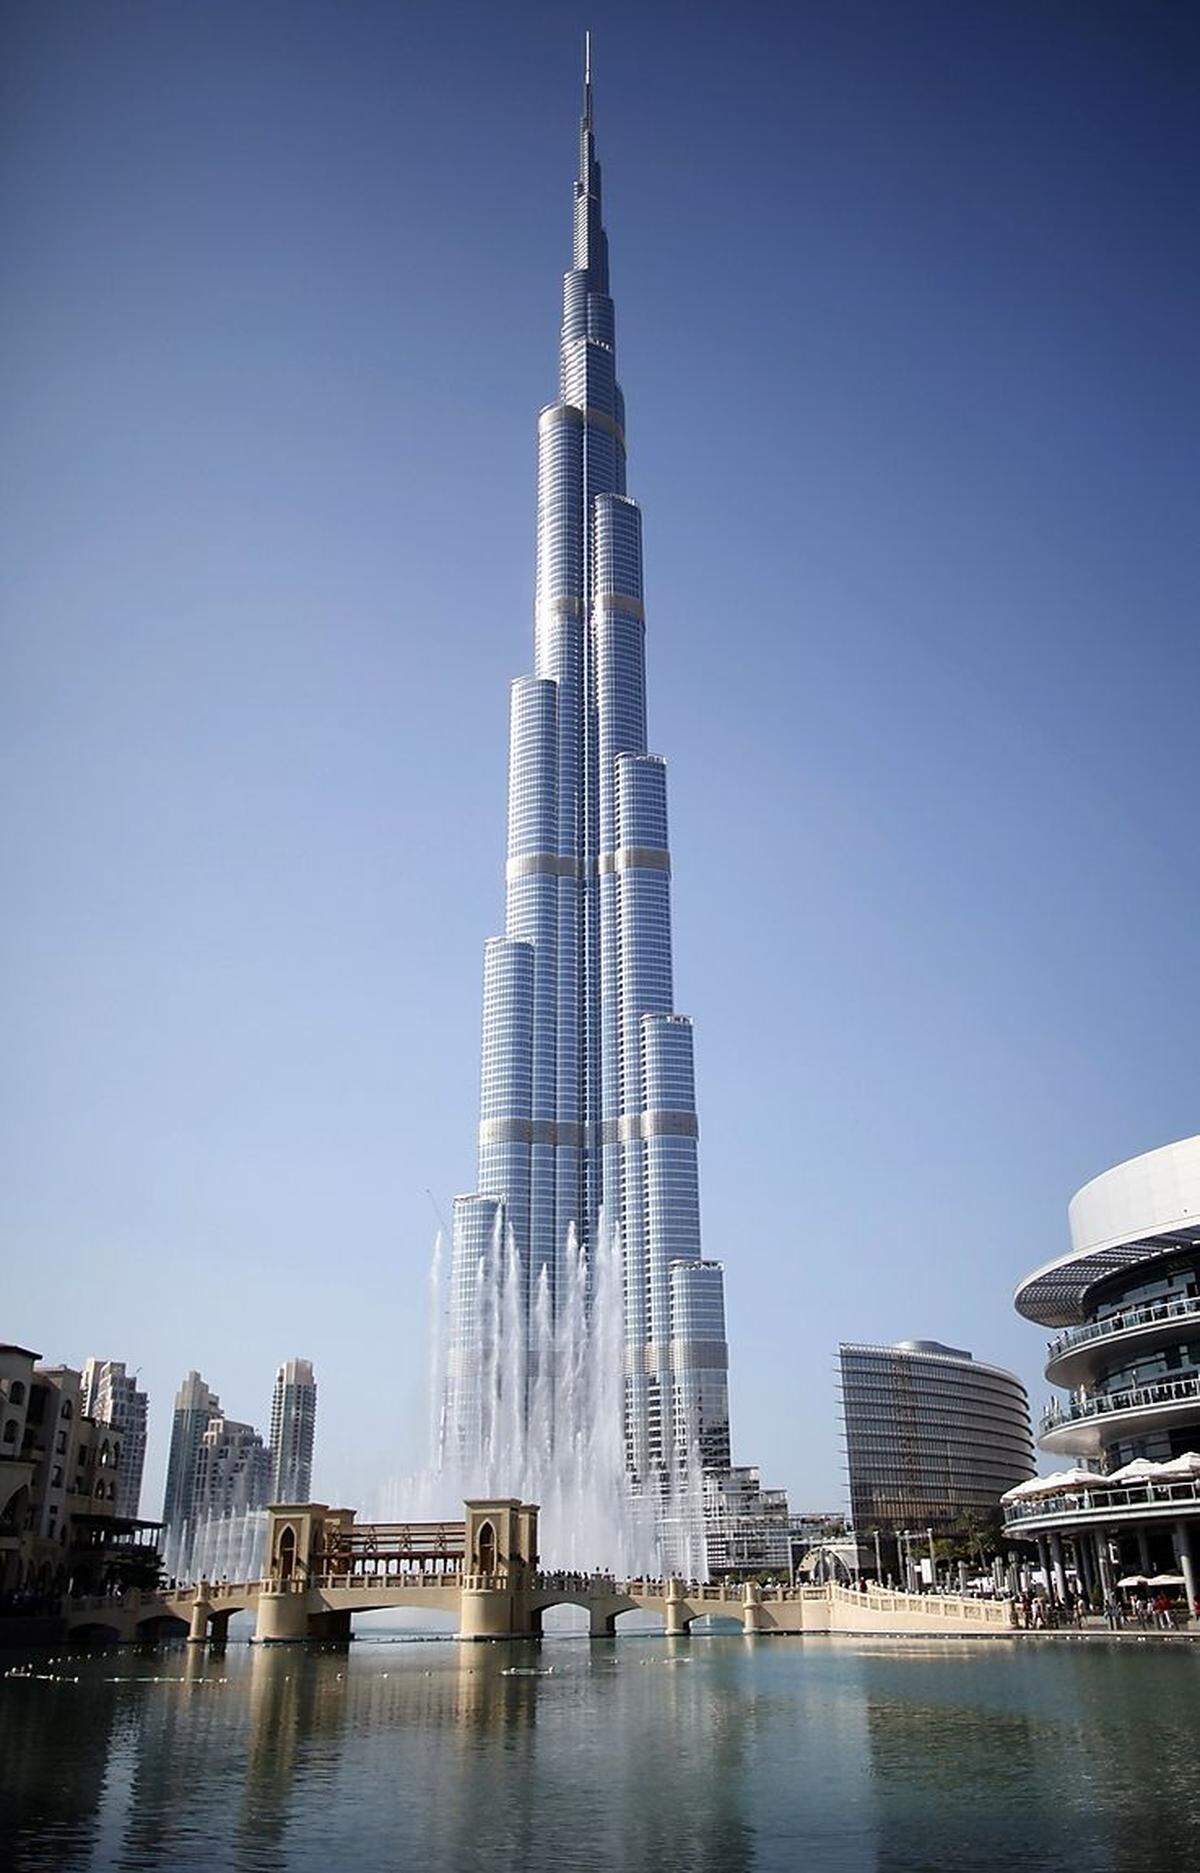 International betrachtet nimmt sich Pianos Turm allerdings eher wie ein Zwerg aus: Mit seinen 310 Metern ist er nicht einmal halb so hoch wie der 828 Meter hohe Burj Khalifa (im Bild) in Dubai, das höchste Gebäude der Welt.